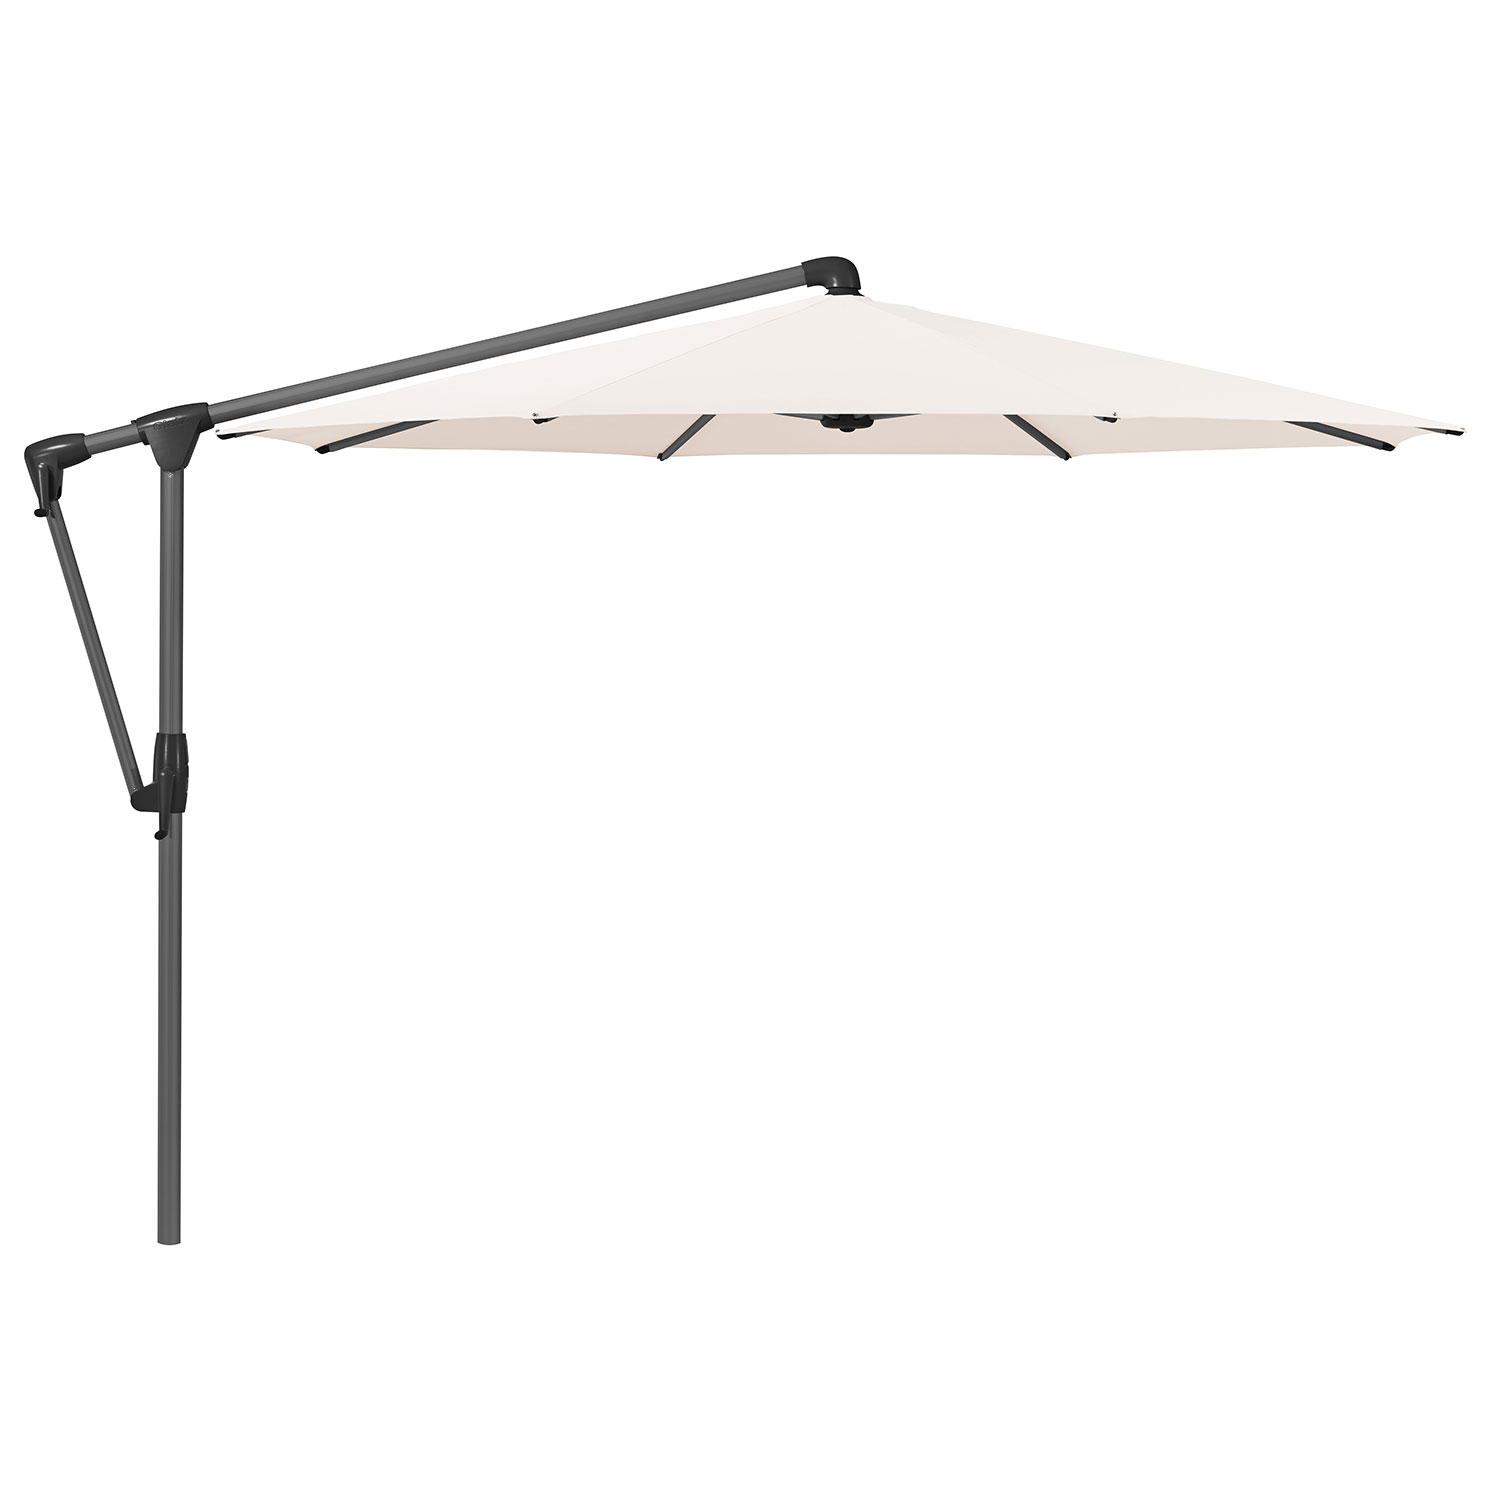 Sunwing Casa frihängande parasoll 330 cm kat.4 antracite alu / 453 vanilla